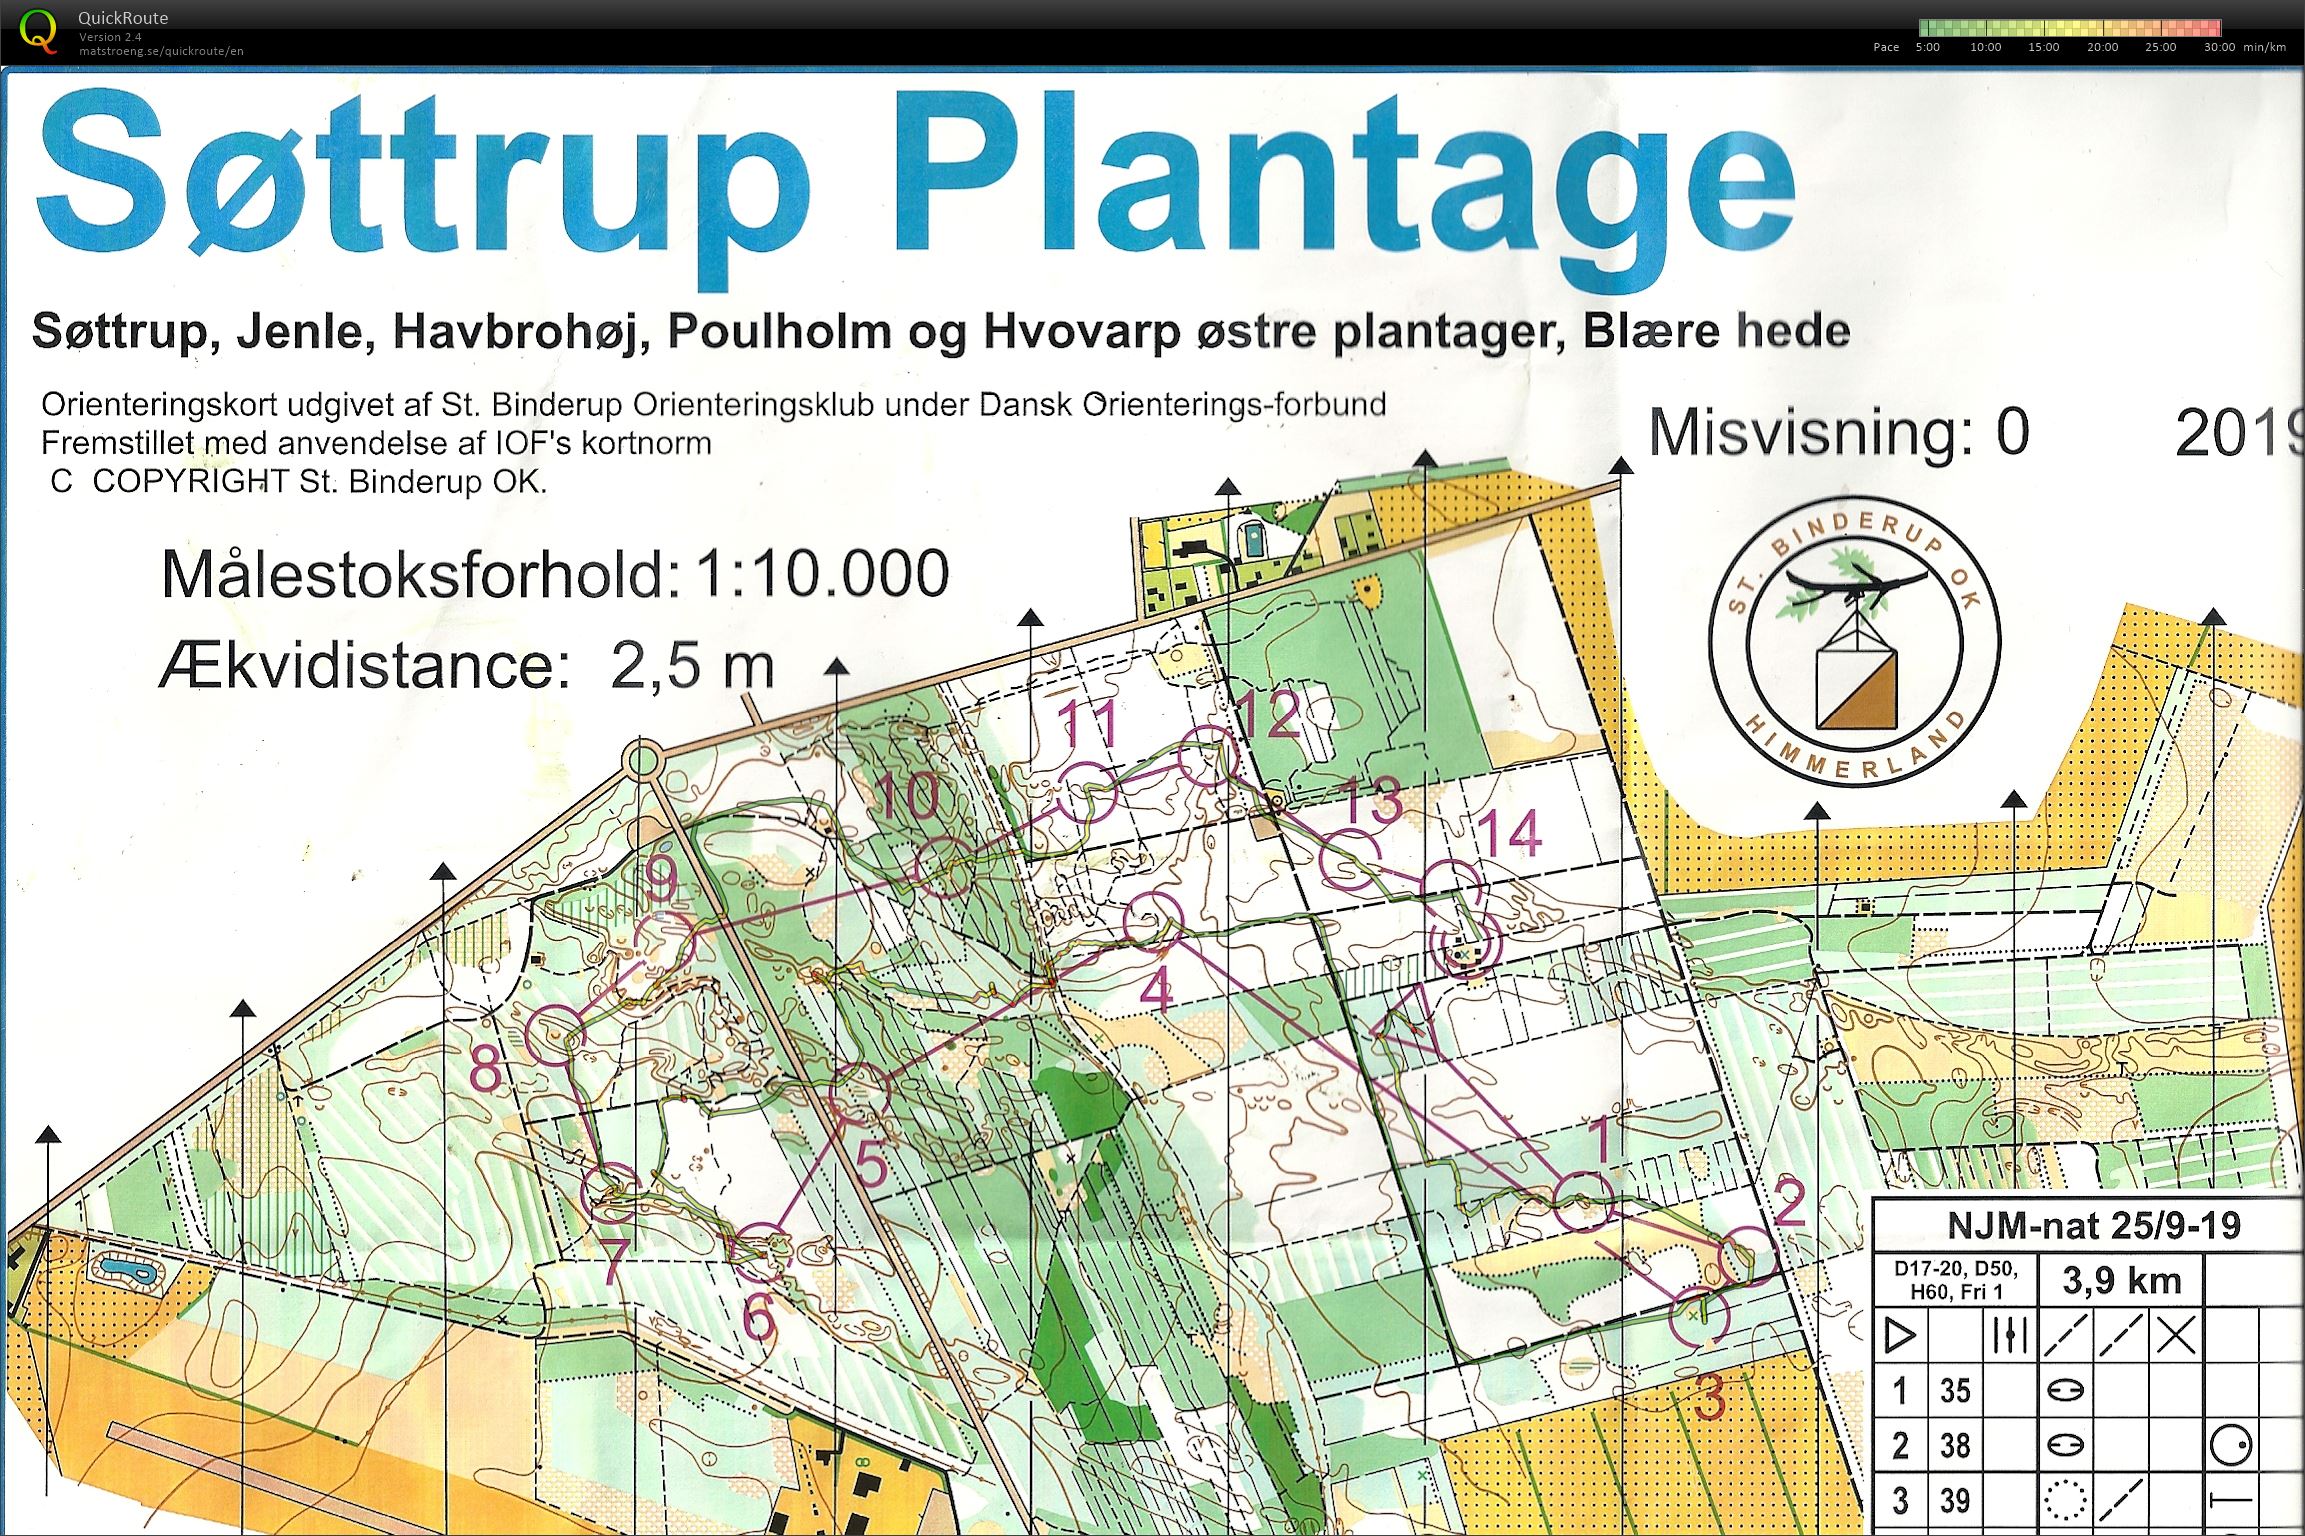 Søttrup Plantage, NJM Nat. Bane D50. (25.09.2019)